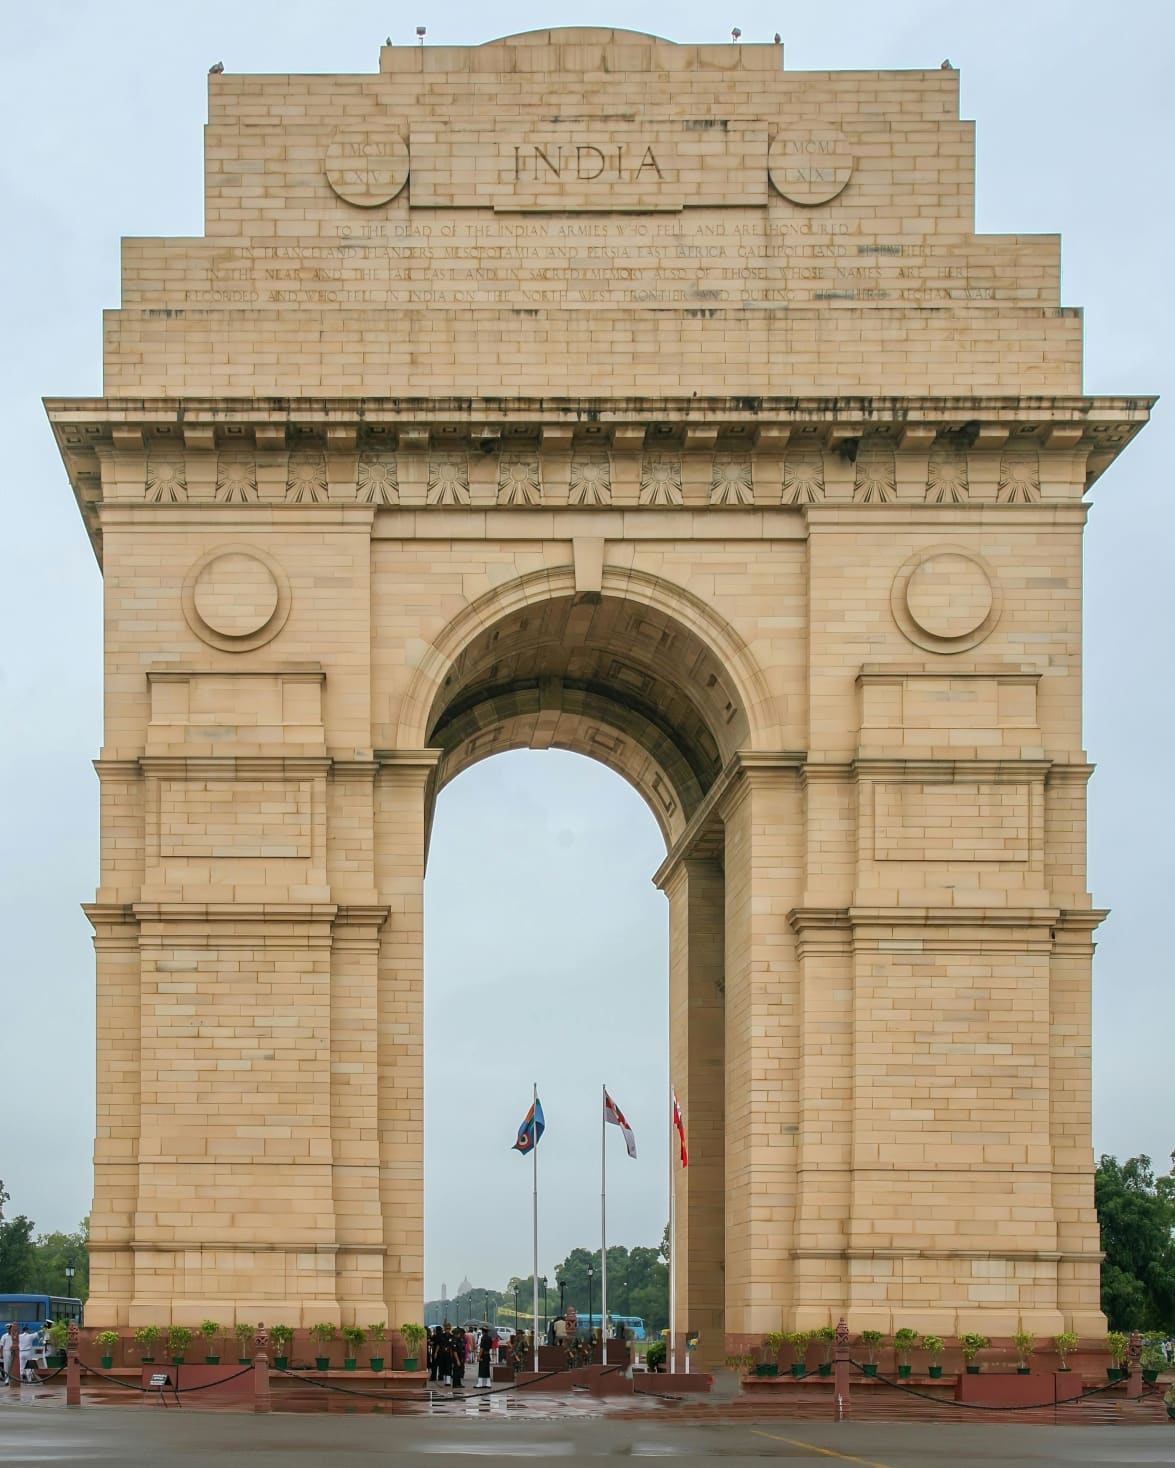 इंडिया गेट - प्रथम विश्व युद्ध के शहीदों की याद में बनाया गया एक स्मारक